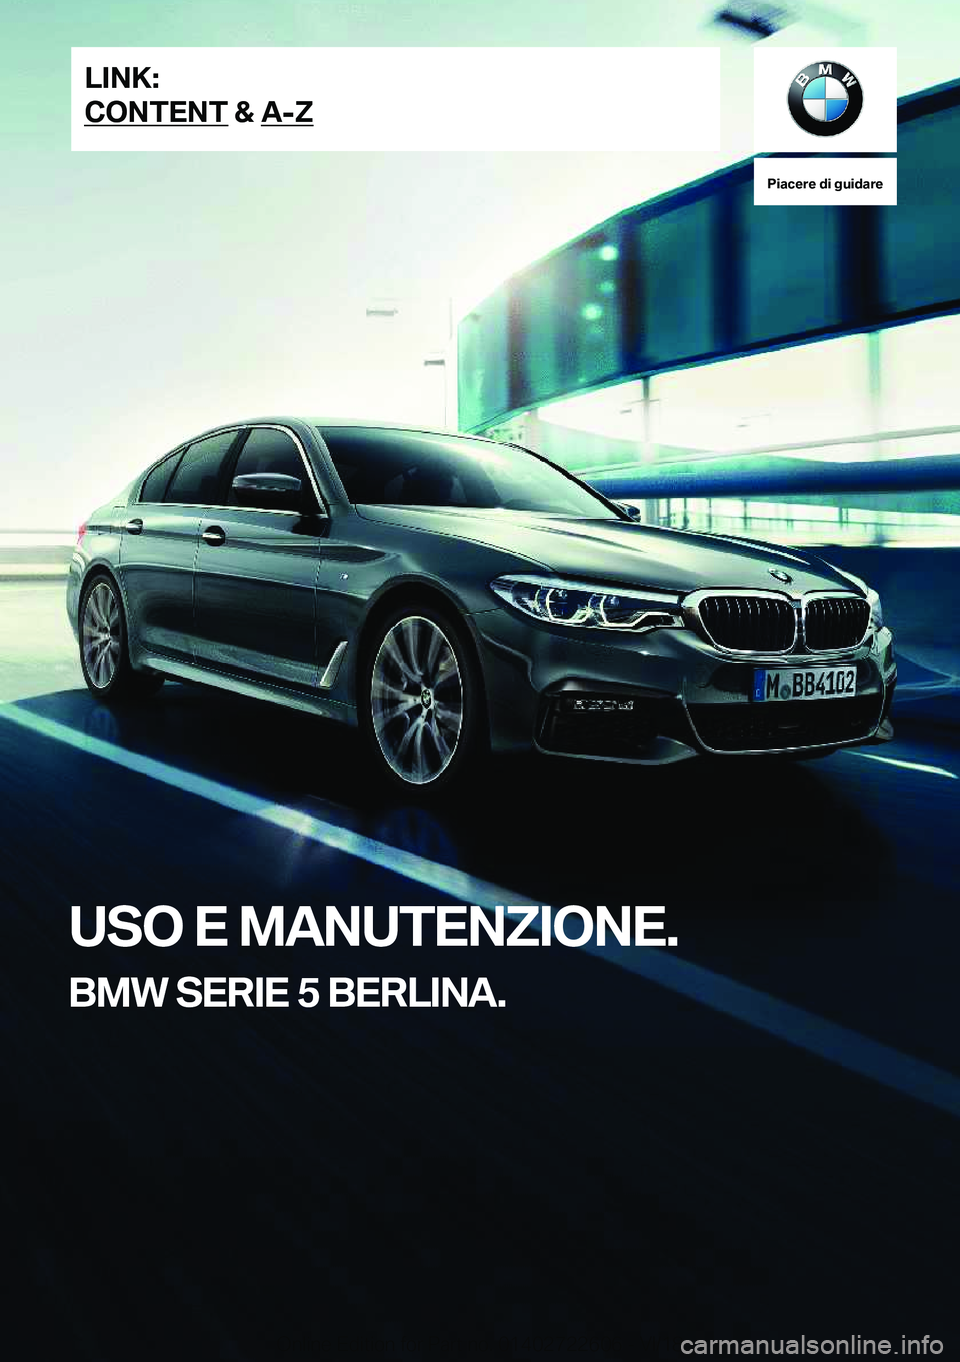 BMW 5 SERIES 2019  Libretti Di Uso E manutenzione (in Italian) �P�i�a�c�e�r�e��d�i��g�u�i�d�a�r�e
�U�S�O��E��M�A�N�U�T�E�N�Z�I�O�N�E�.
�B�M�W��S�E�R�I�E��5��B�E�R�L�I�N�A�.�L�I�N�K�:
�C�O�N�T�E�N�T��&��A�-�Z�O�n�l�i�n�e��E�d�i�t�i�o�n��f�o�r��P�a�r�t�